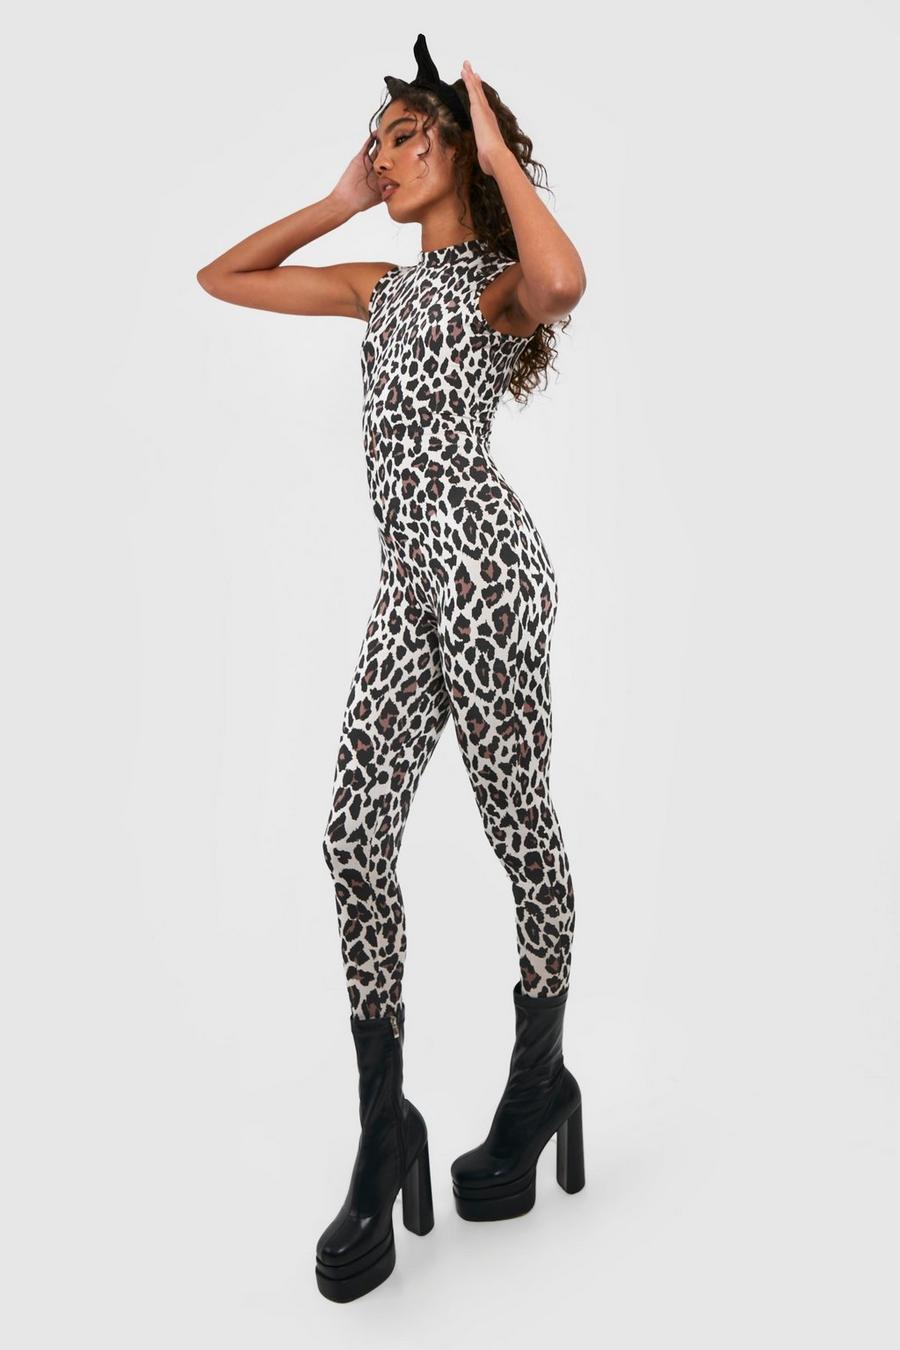 Brown Tall Halloween Sleeveless High Neck Leopard Print Unitard